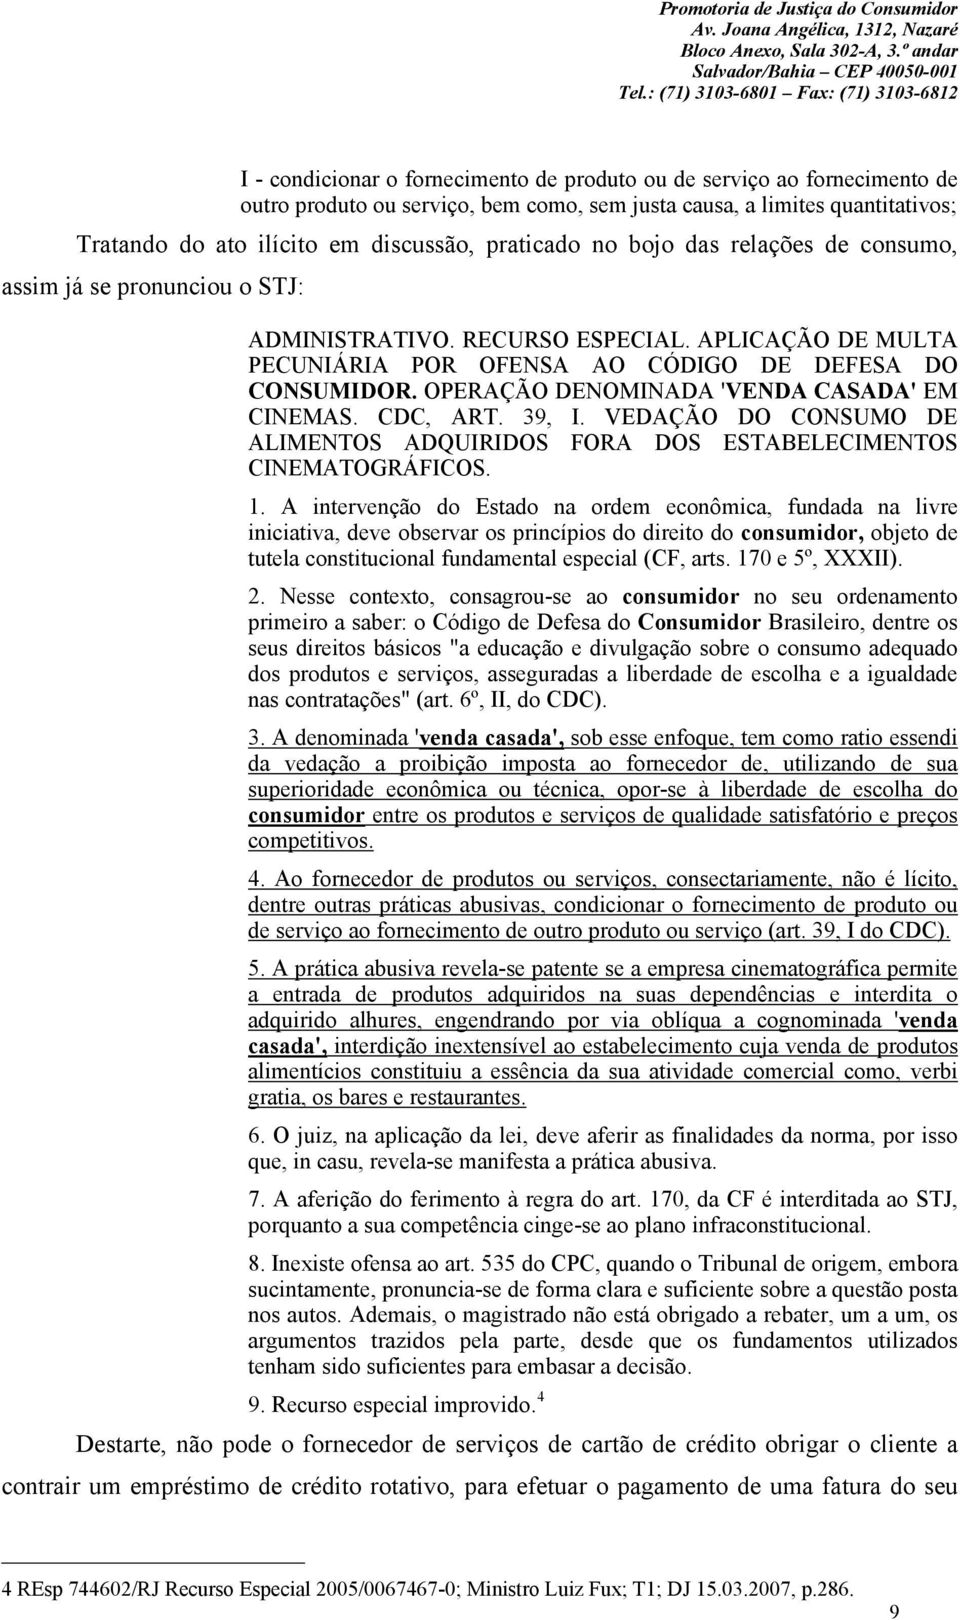 OPERAÇÃO DENOMINADA 'VENDA CASADA' EM CINEMAS. CDC, ART. 39, I. VEDAÇÃO DO CONSUMO DE ALIMENTOS ADQUIRIDOS FORA DOS ESTABELECIMENTOS CINEMATOGRÁFICOS. 1.